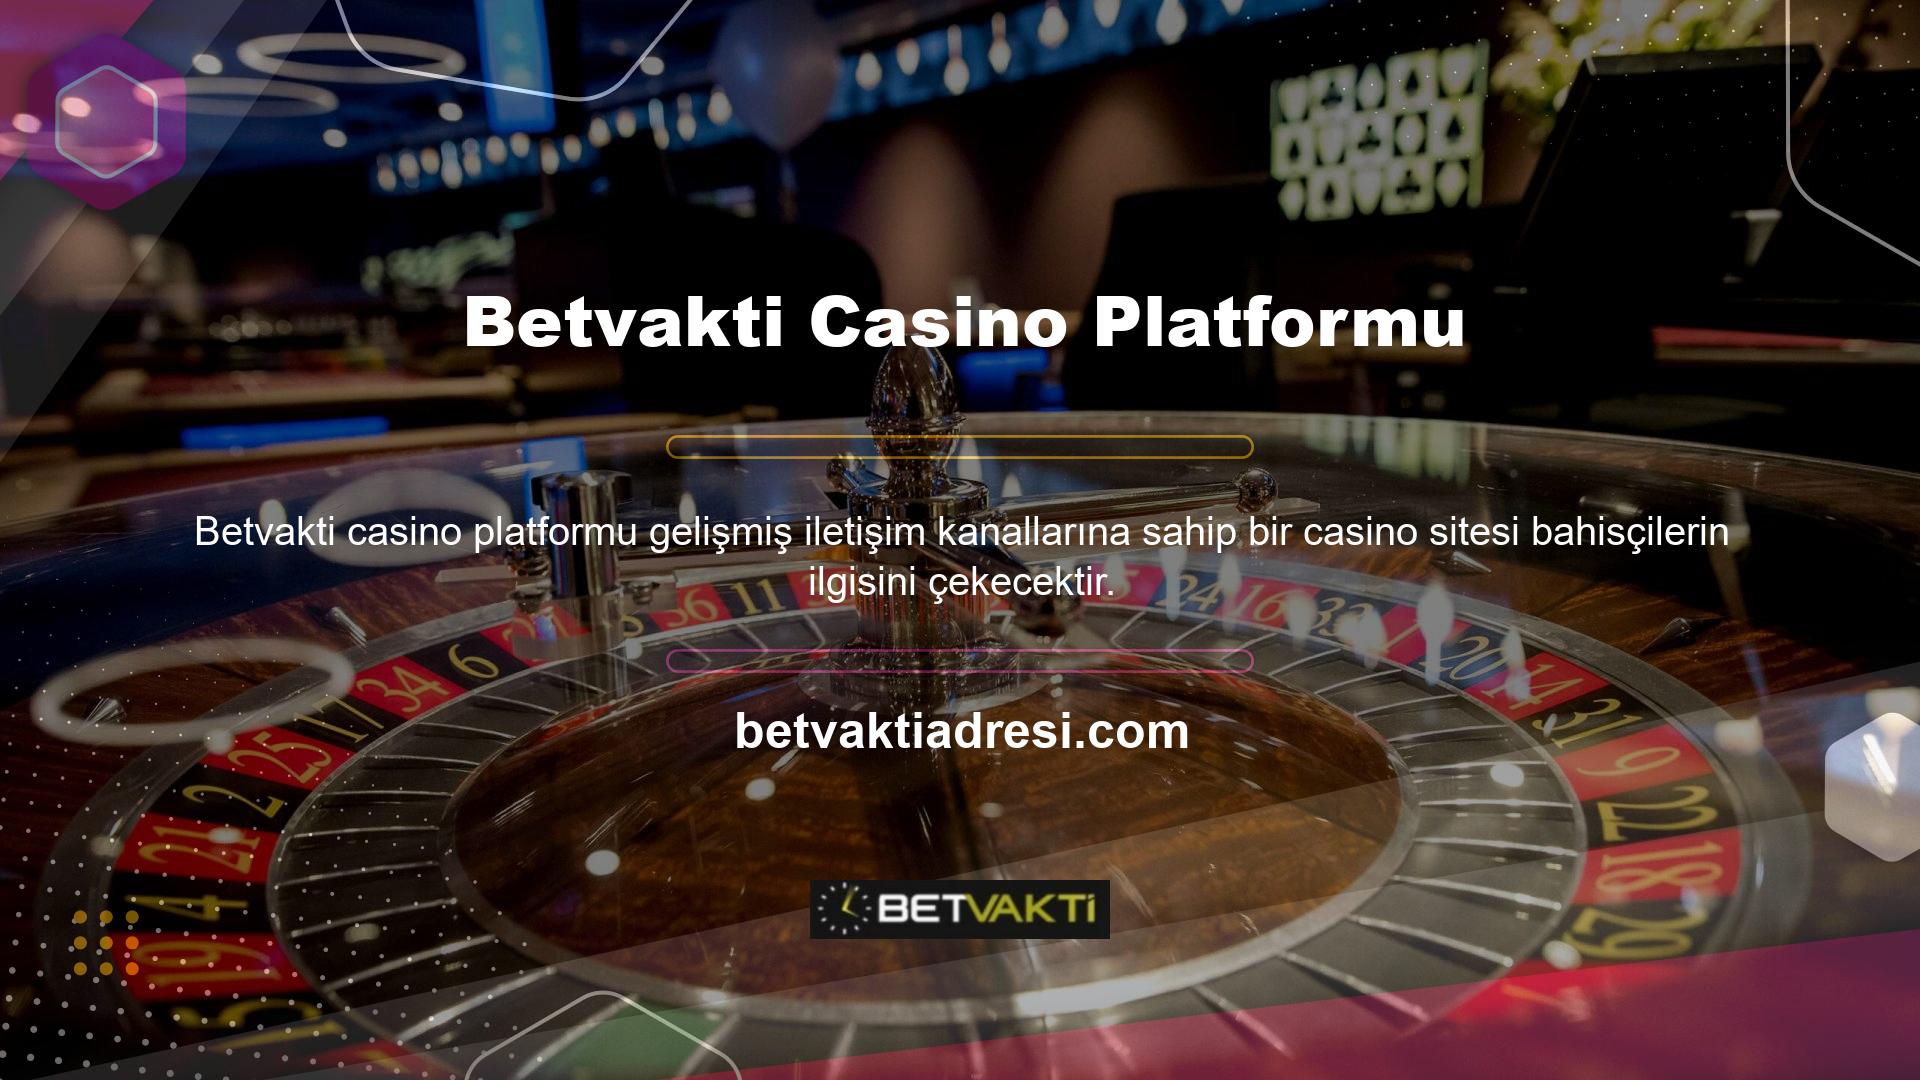 Betvakti iletişim kanalları onu güçlü bir casino platformu haline getirerek birçok bahisçinin tercih ettiği bir şirket haline getiriyor